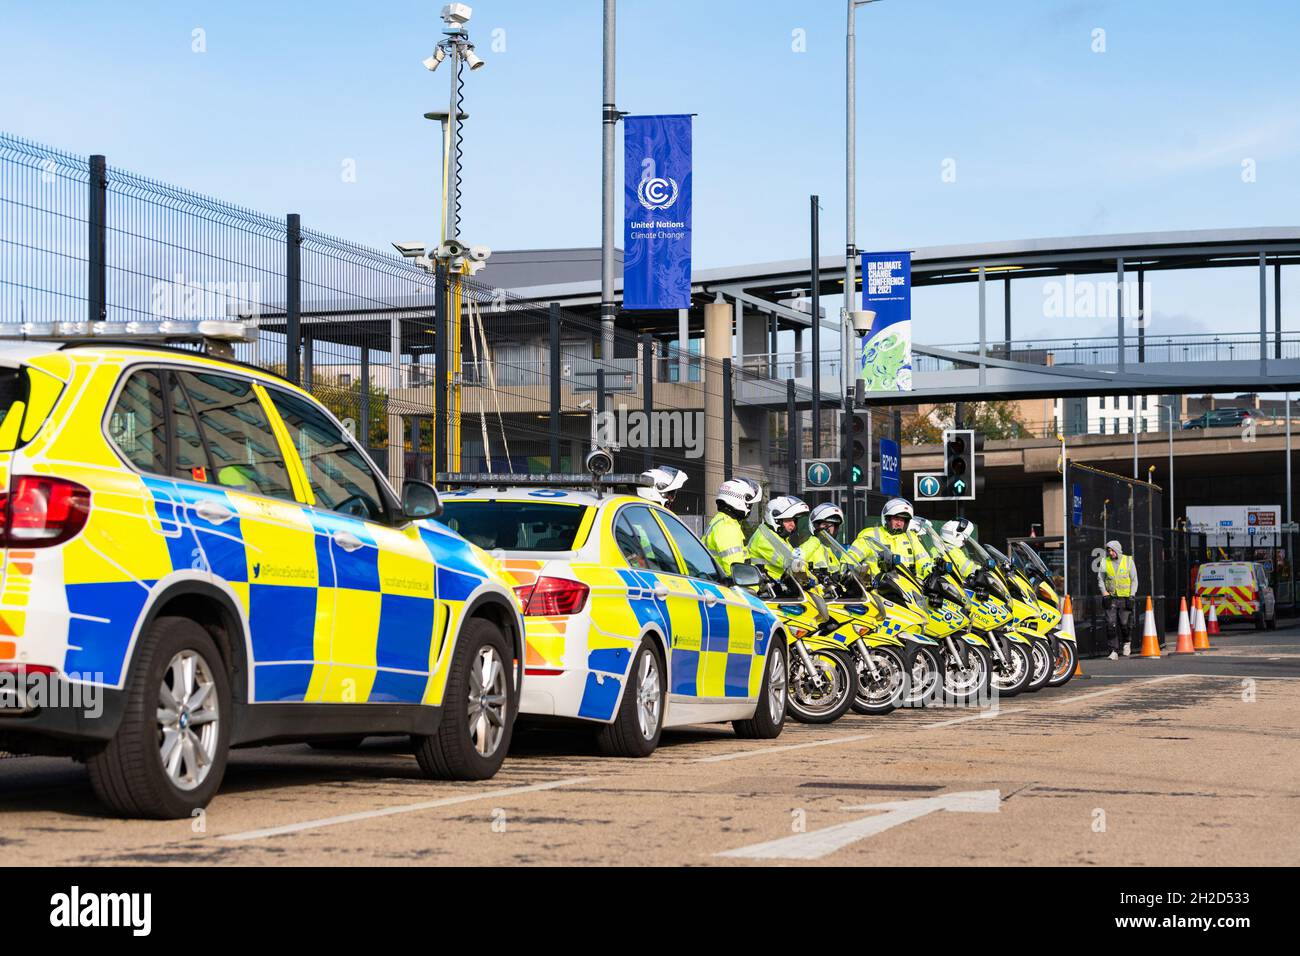 Glasgow, Schottland, Großbritannien. Oktober 2021. COP26 - Polizei übt Fahrzeugbegleiter auf dem Scottish Event Campus vor der UN-Klimakonferenz Quelle: Kay Roxby/Alamy Live News Stockfoto